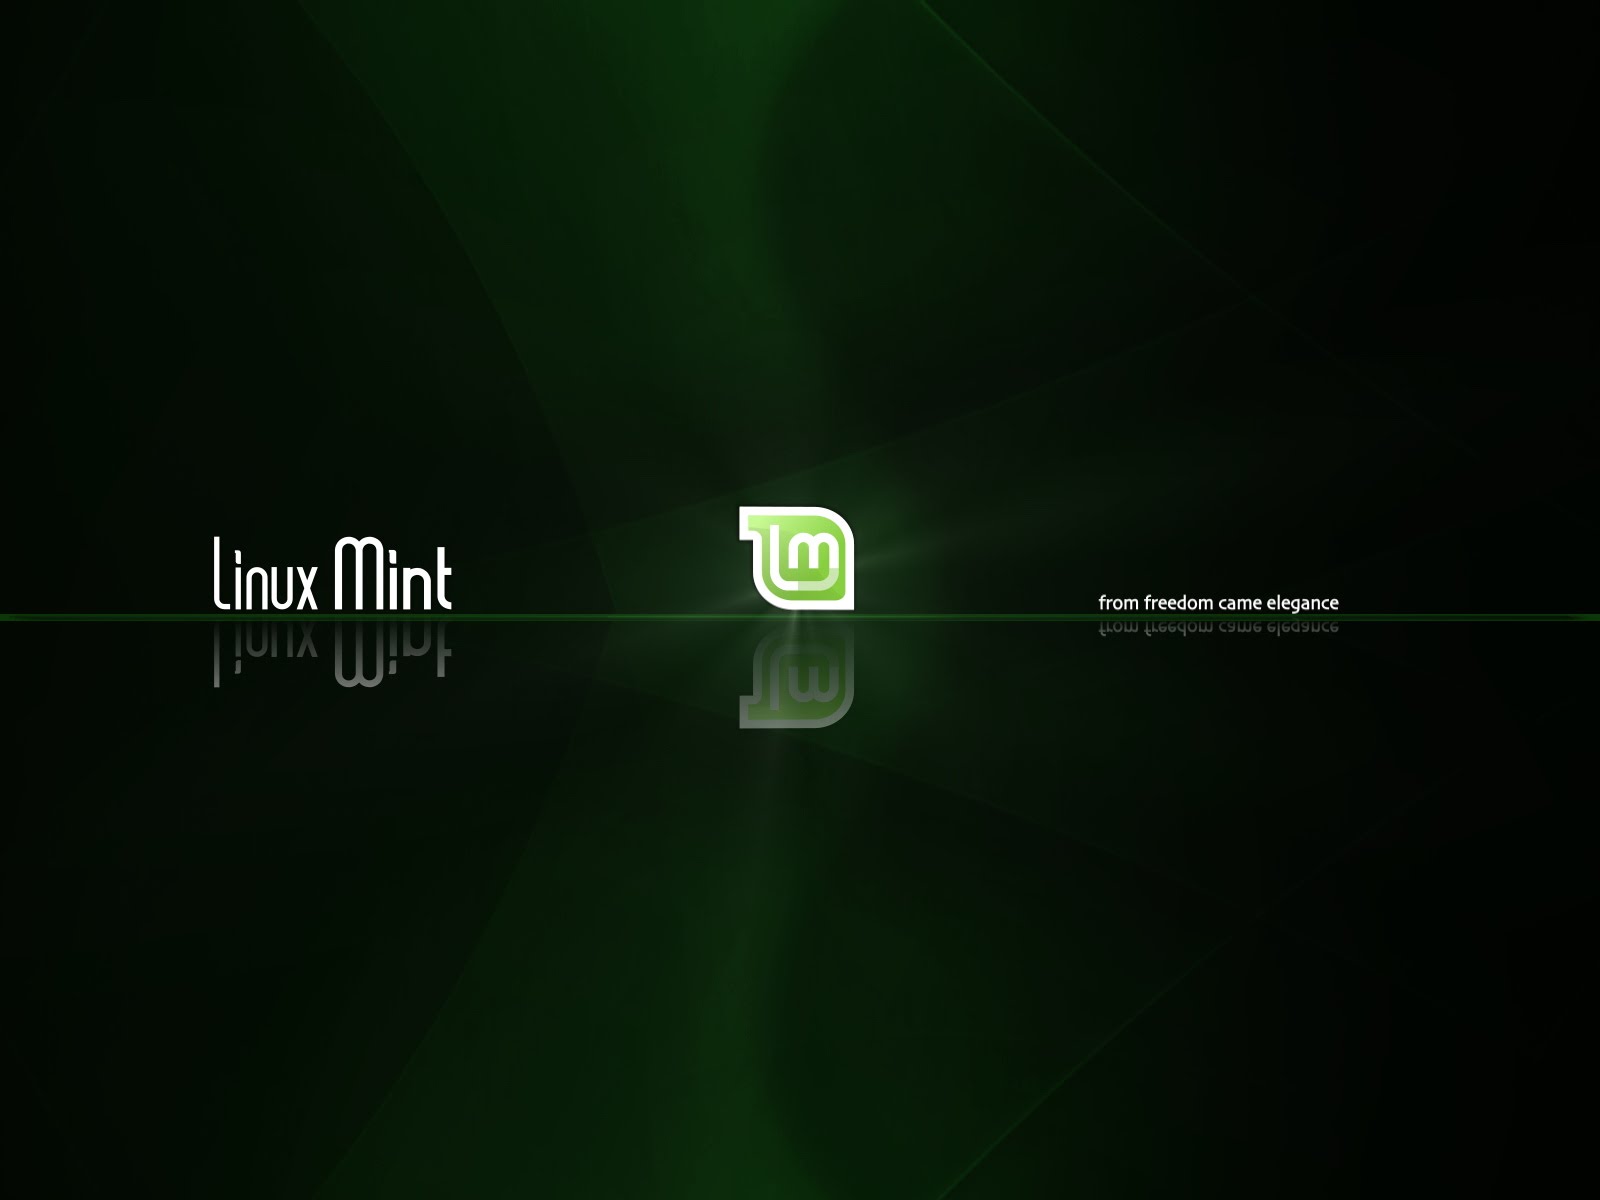 Bạn đang tìm kiếm hình nền động Linux Mint tuyệt vời? Vậy thì đây là nơi bạn hãy đến. Hãy tải về bộ sưu tập hình nền động cho Linux Mint và làm cho màn hình của bạn trở nên sống động hơn bao giờ hết.